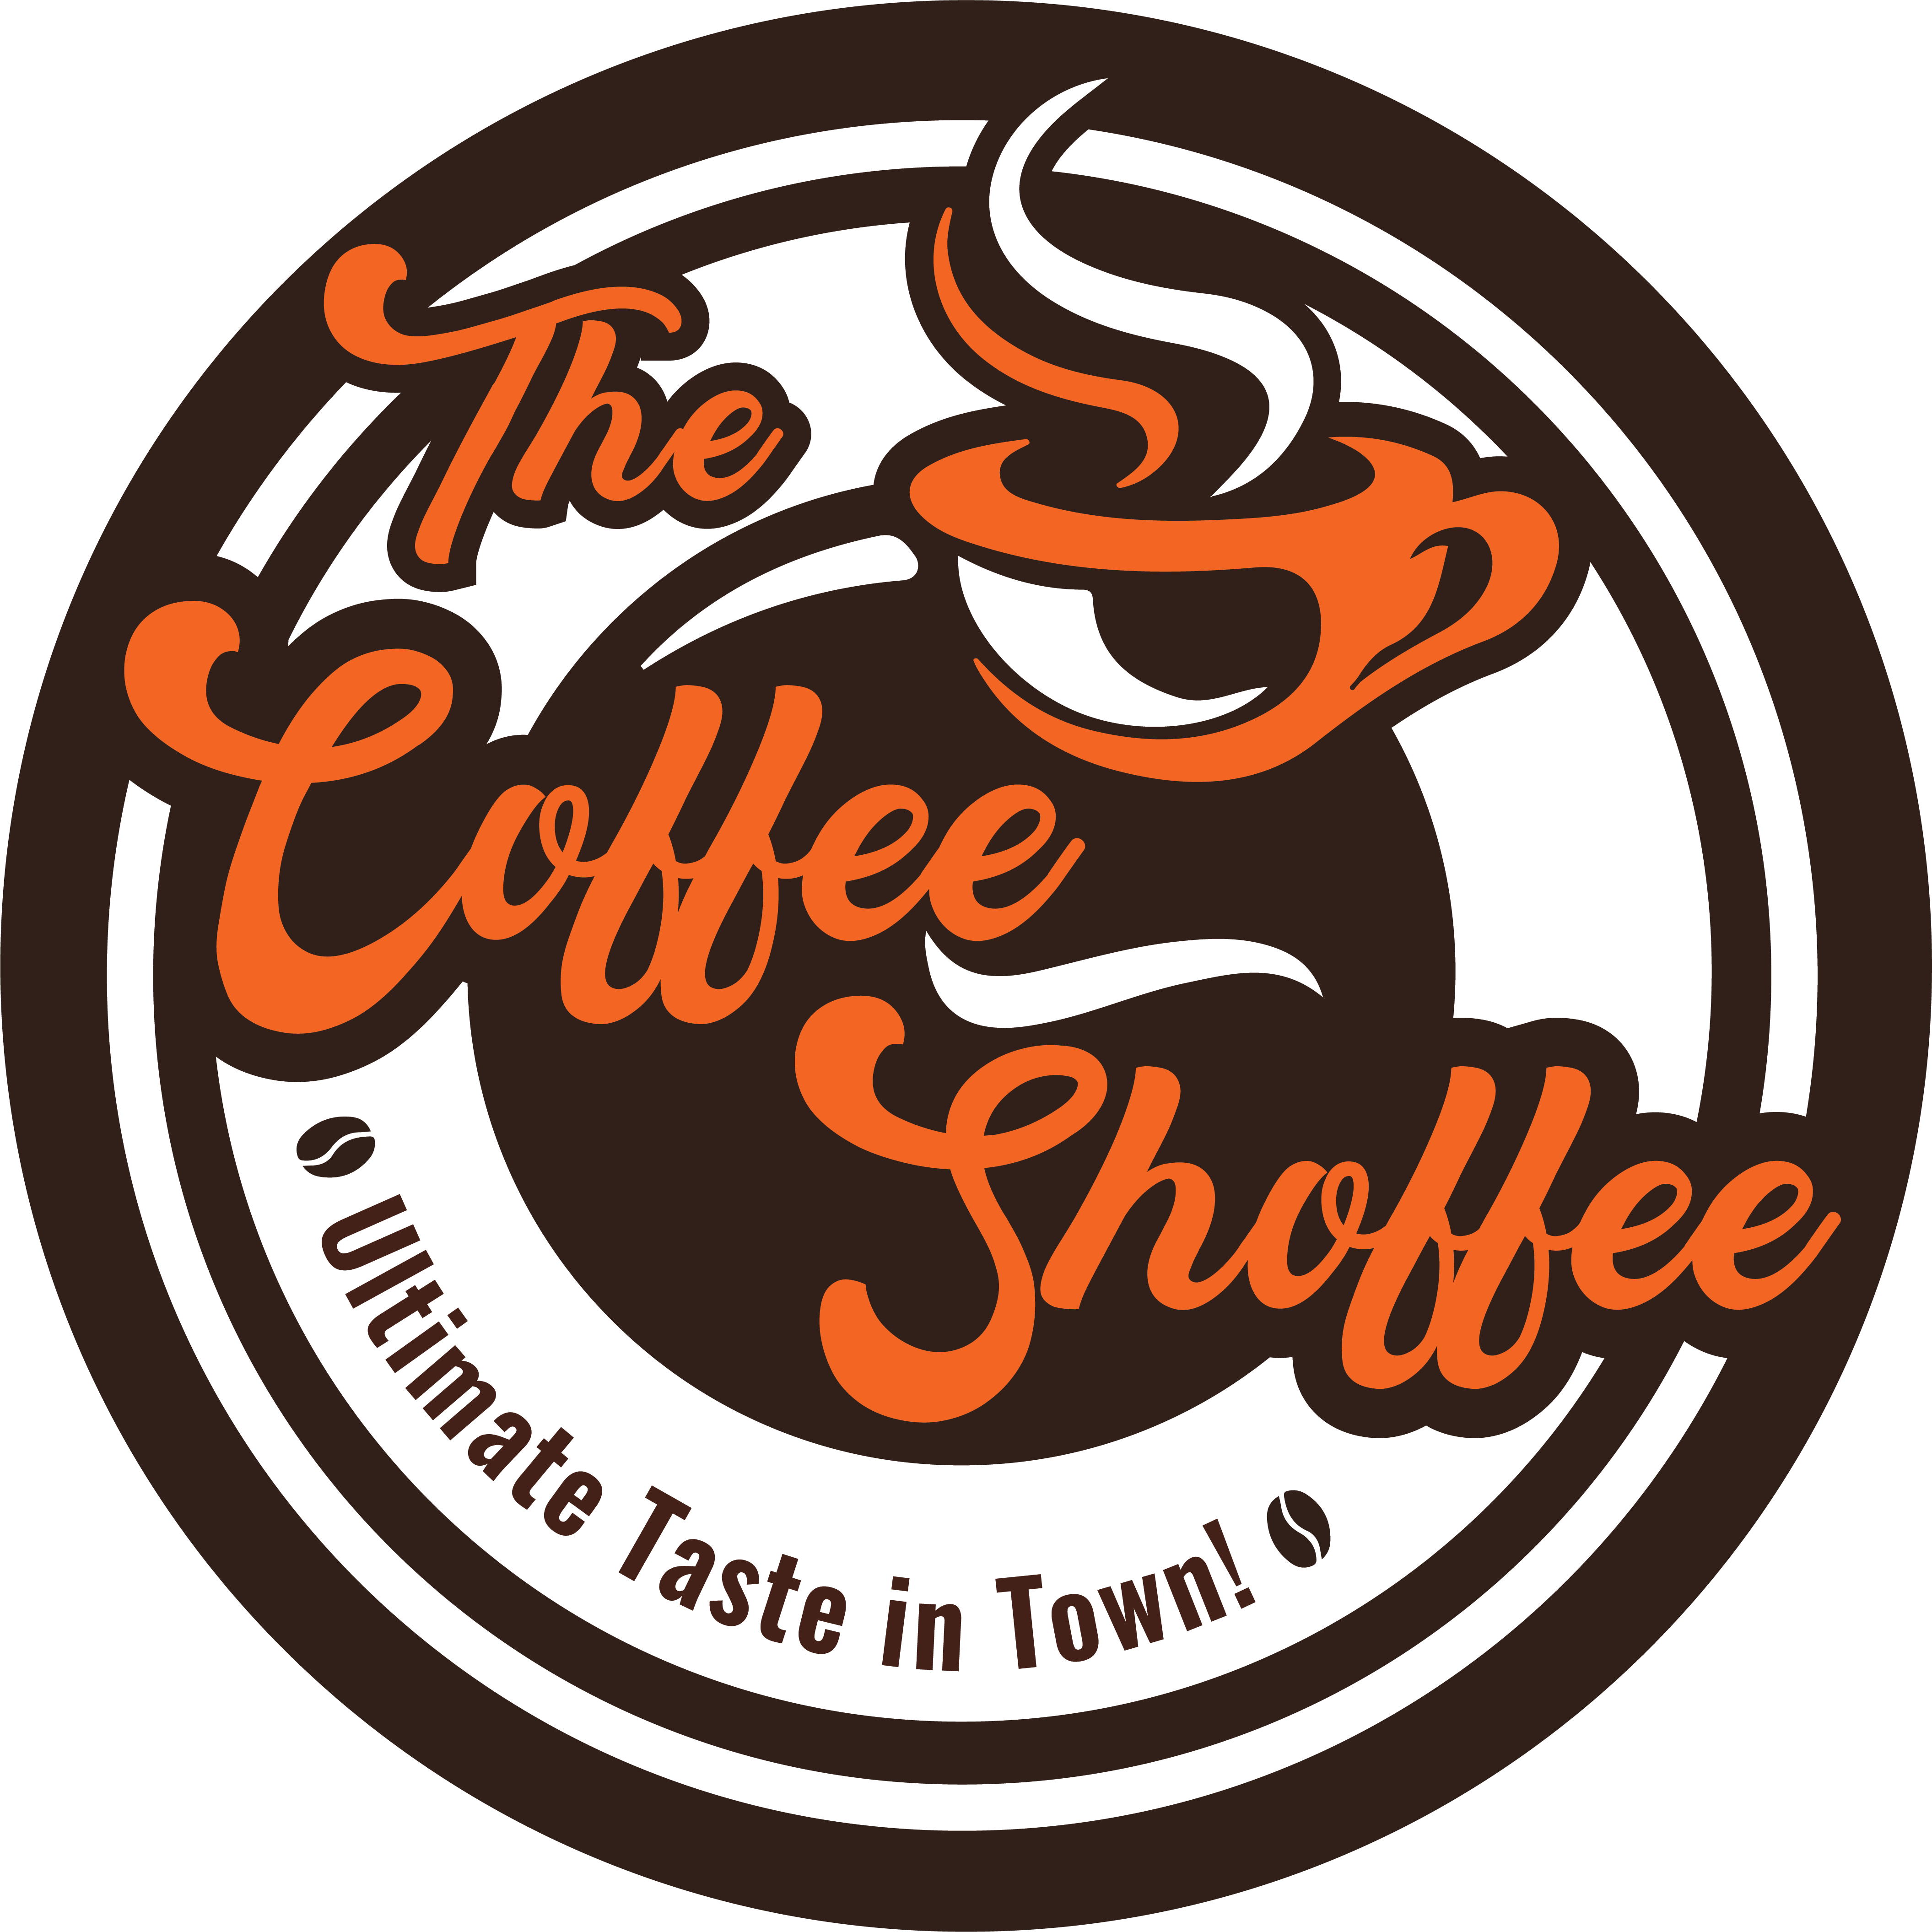 The Coffee Shoffee